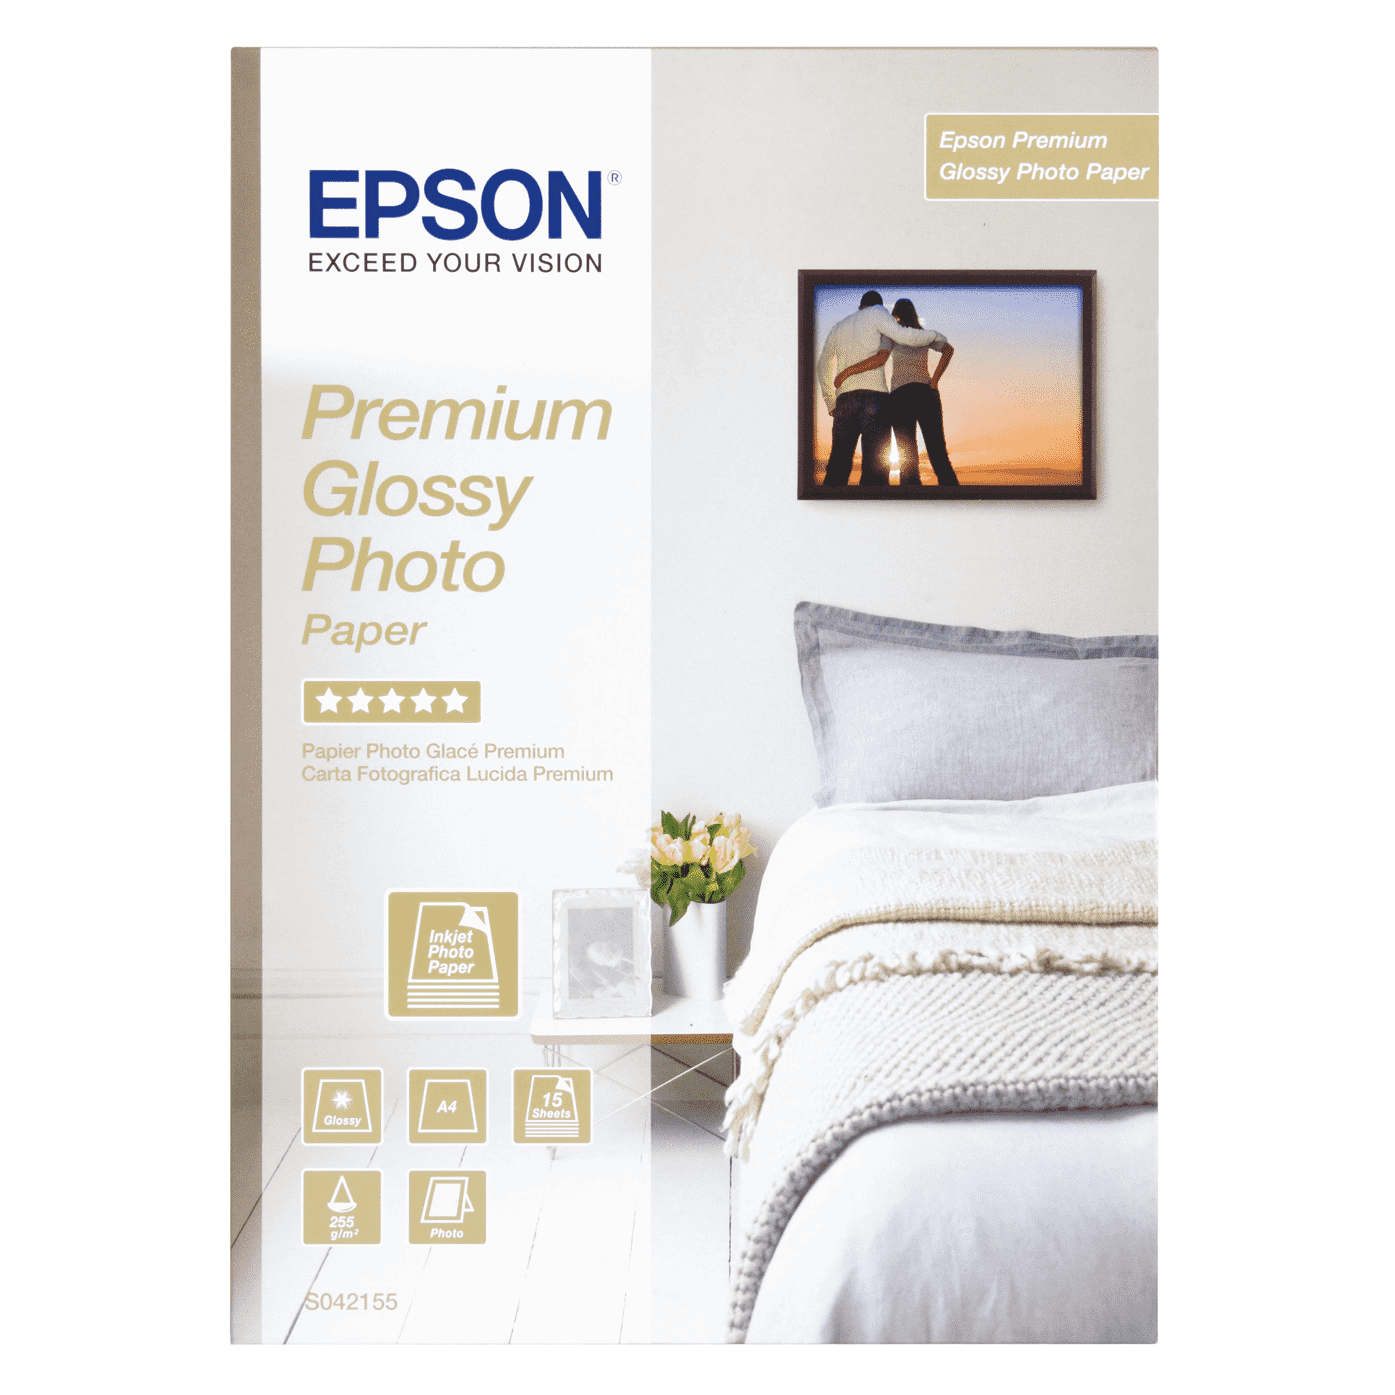 Epson Premium Glossy Photo Paper, 15 Sheets, A4 - White